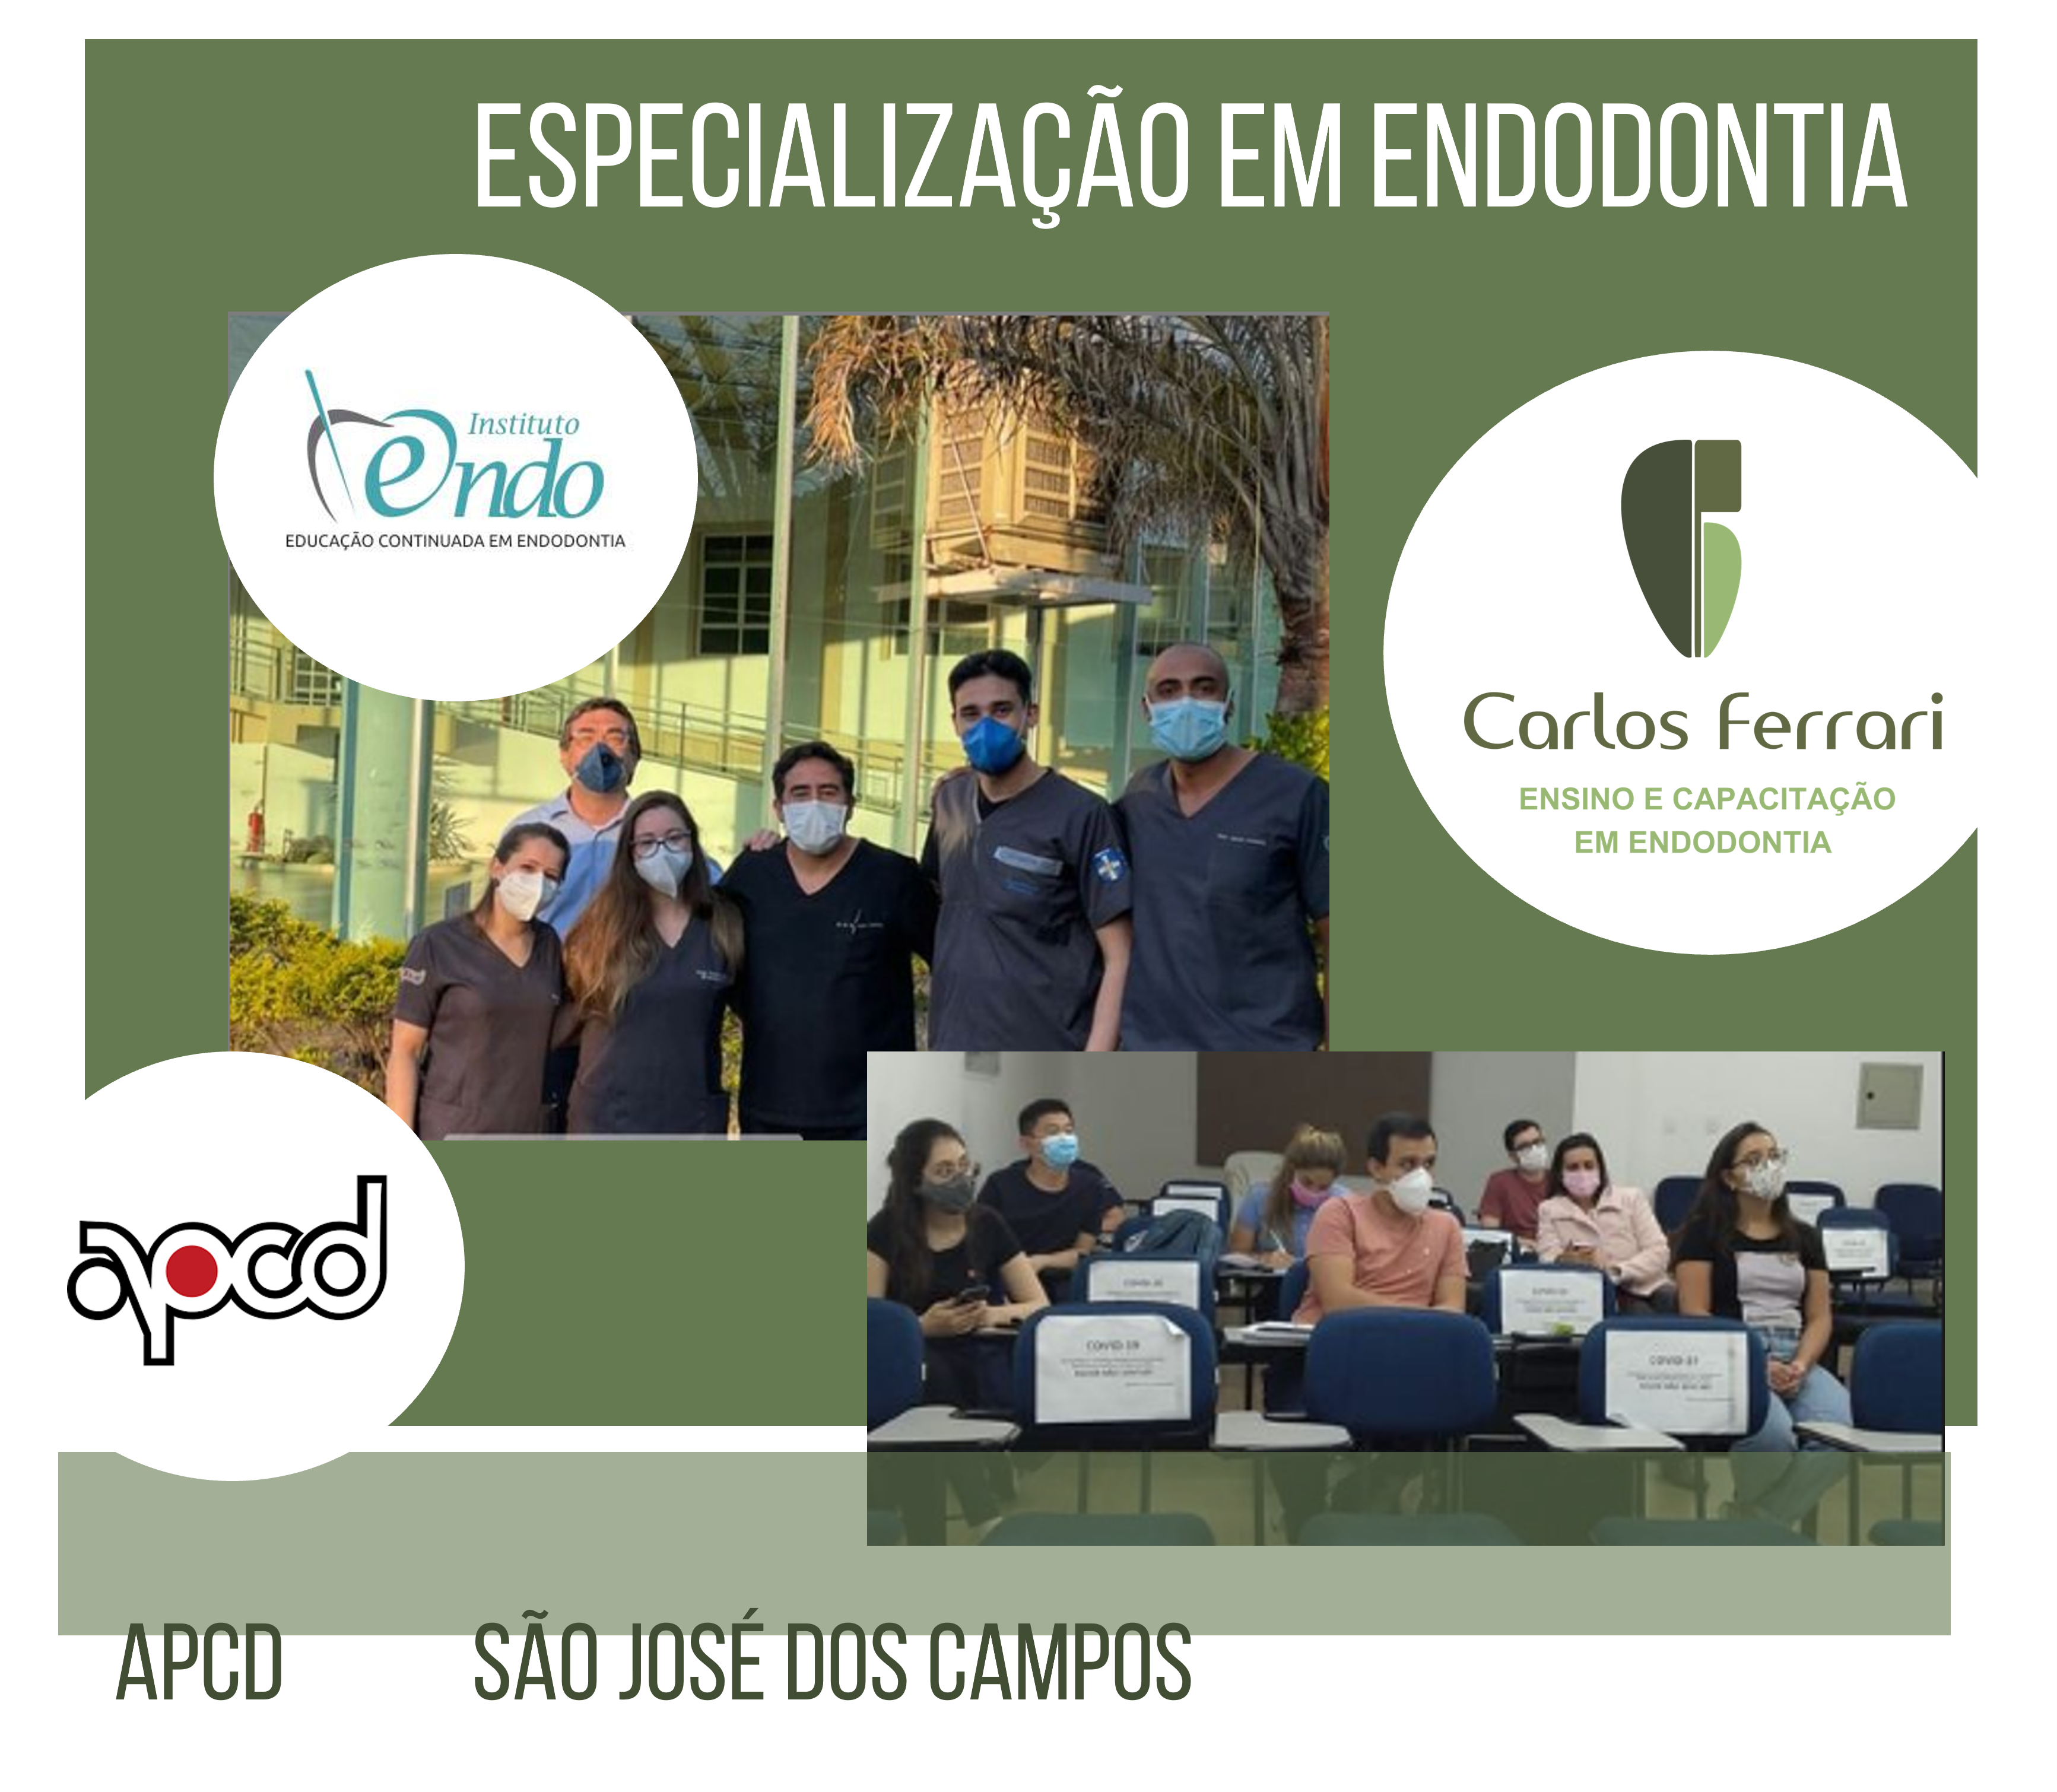 You are currently viewing Especialização em Endodontia APCD São José dos Campos.